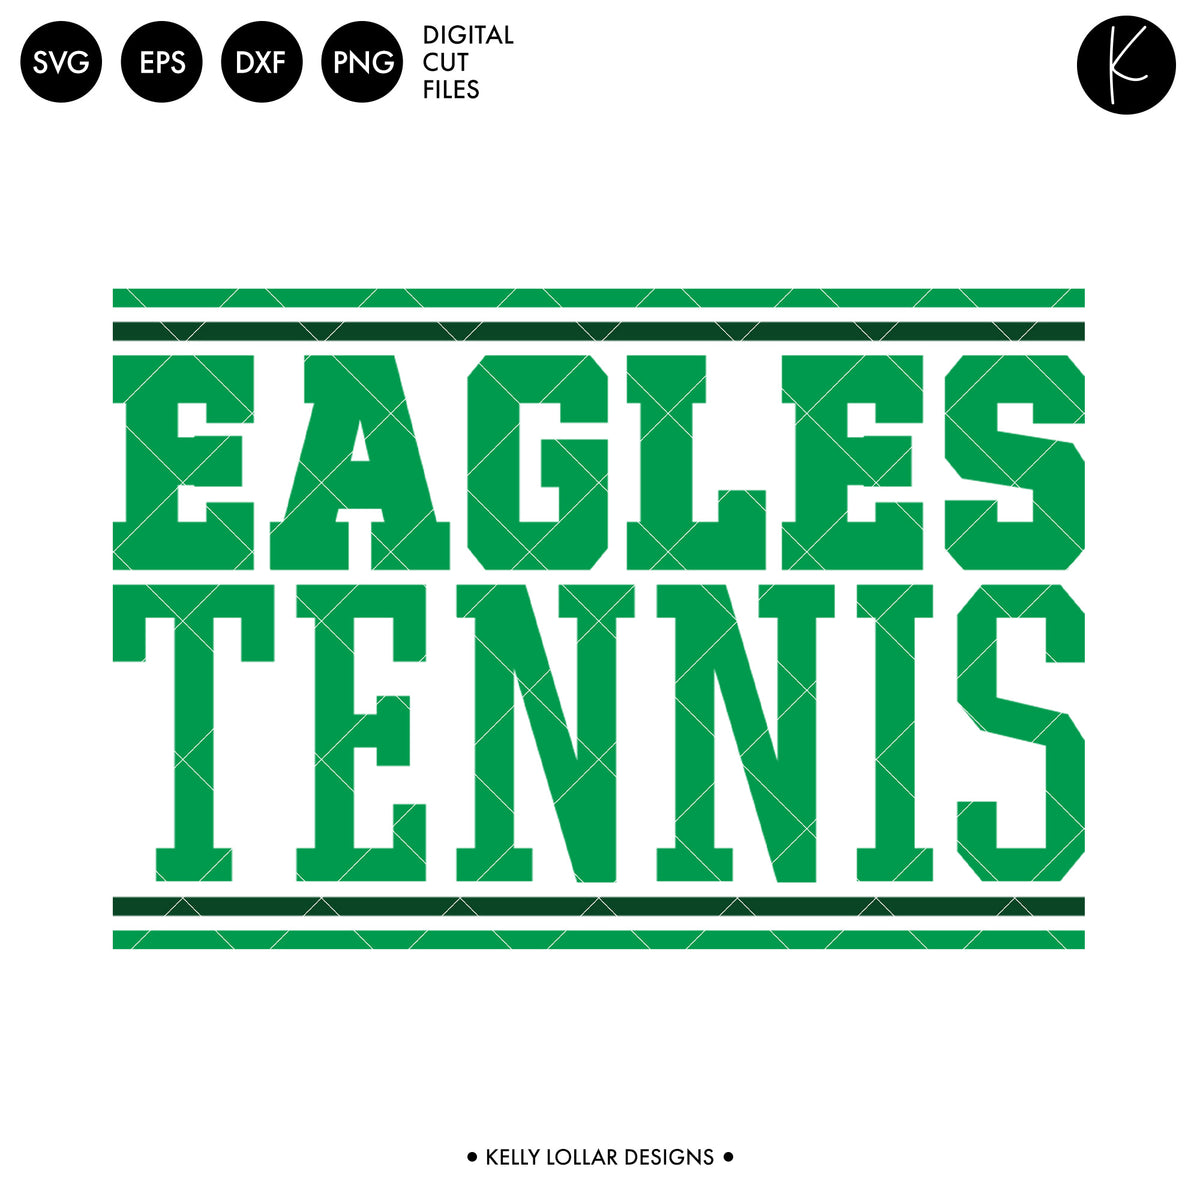 Eagles Tennis Bundle | SVG DXF EPS PNG Cut Files